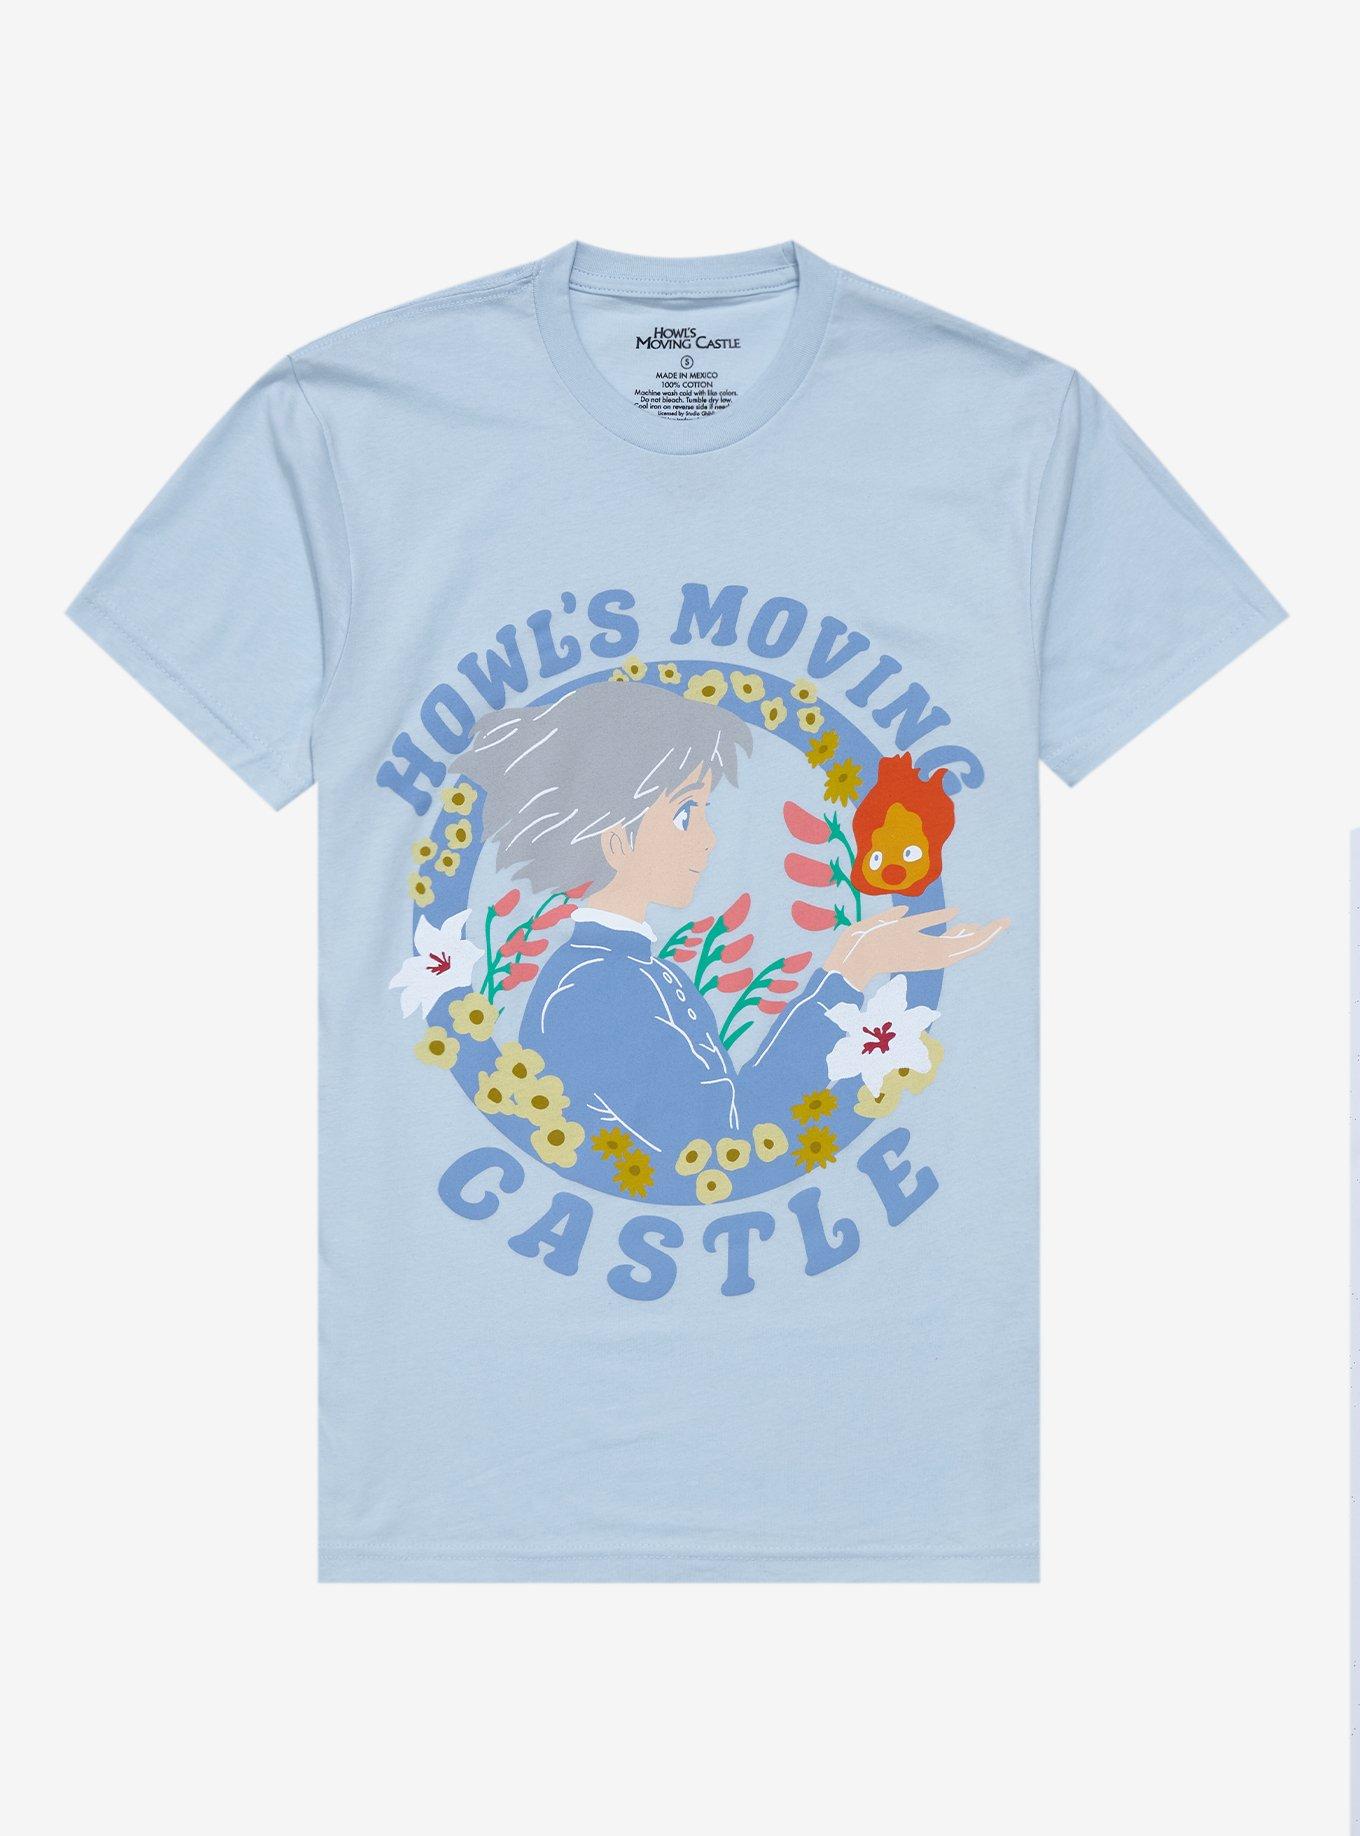 Howl's Moving Castle  Raising Children Network